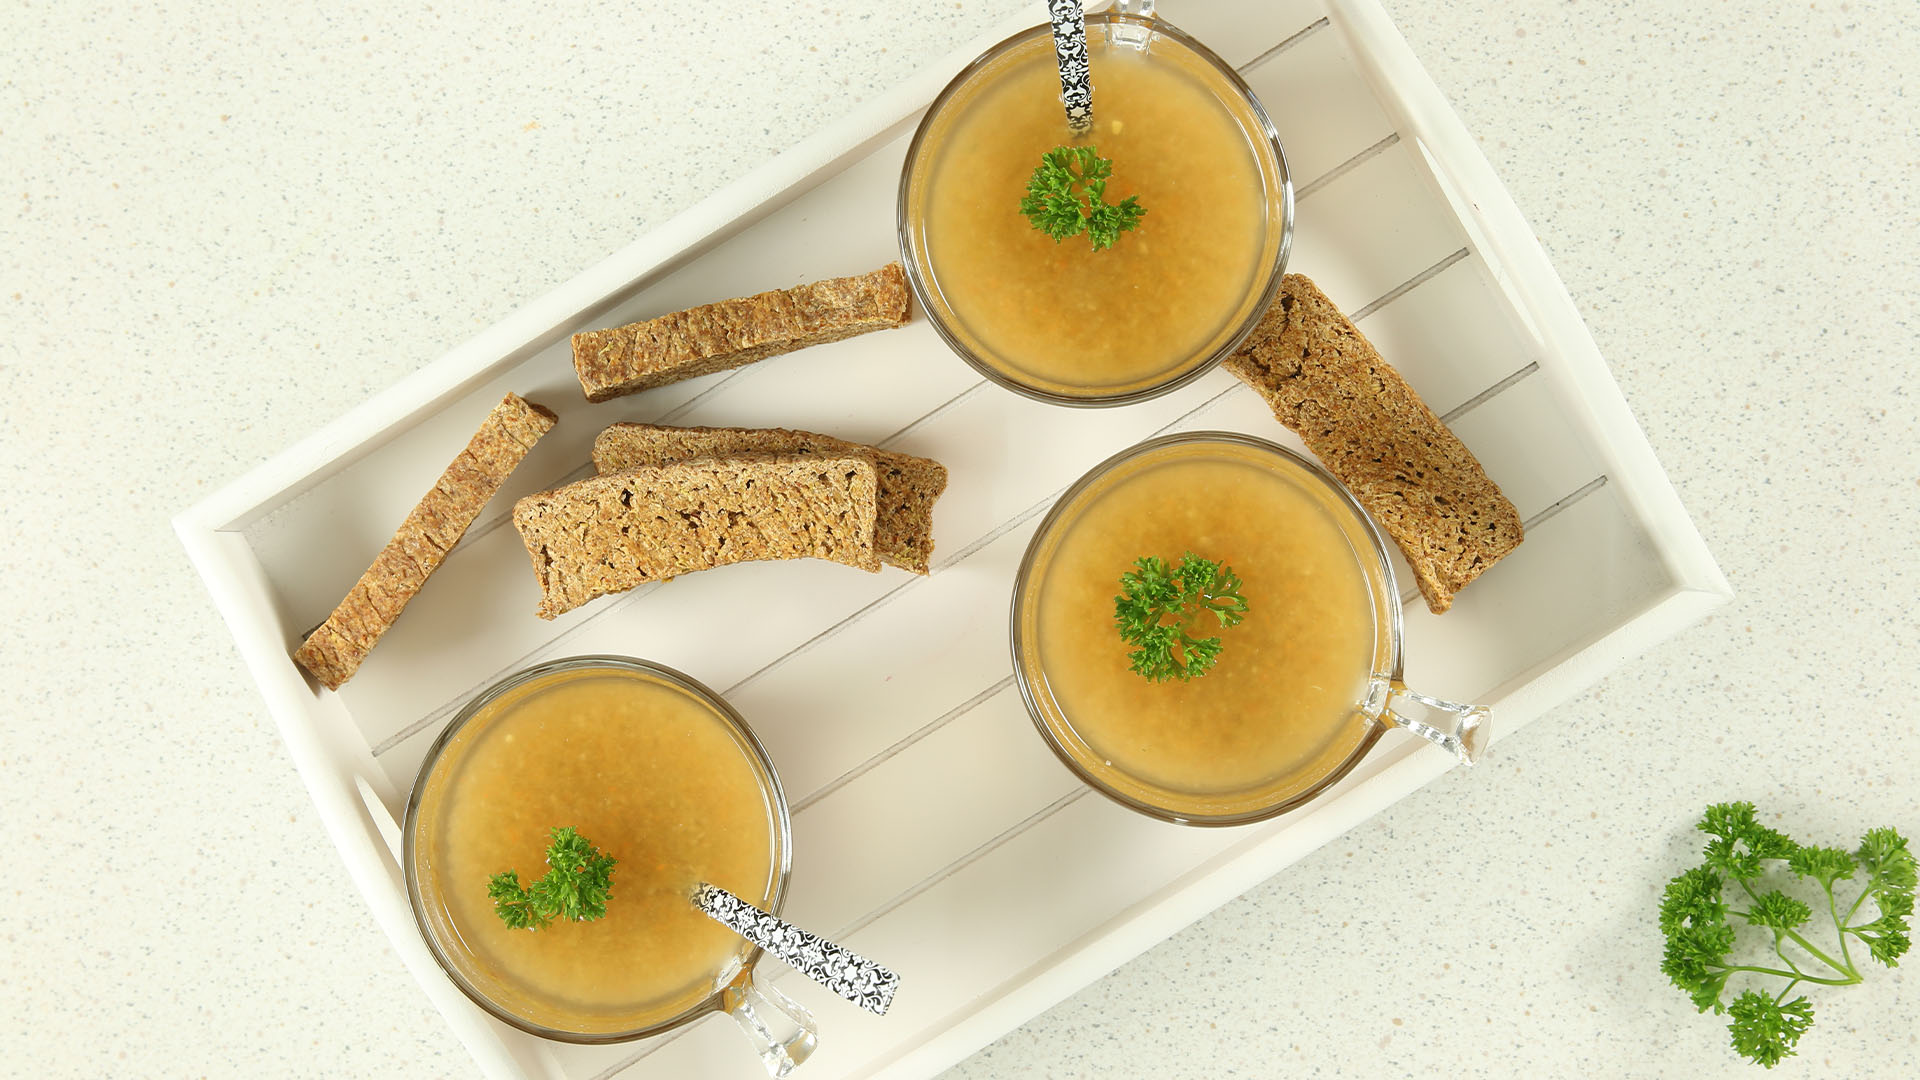 Déshydratation : soupe et bouillon de légumes crus - Crusine Gourmande